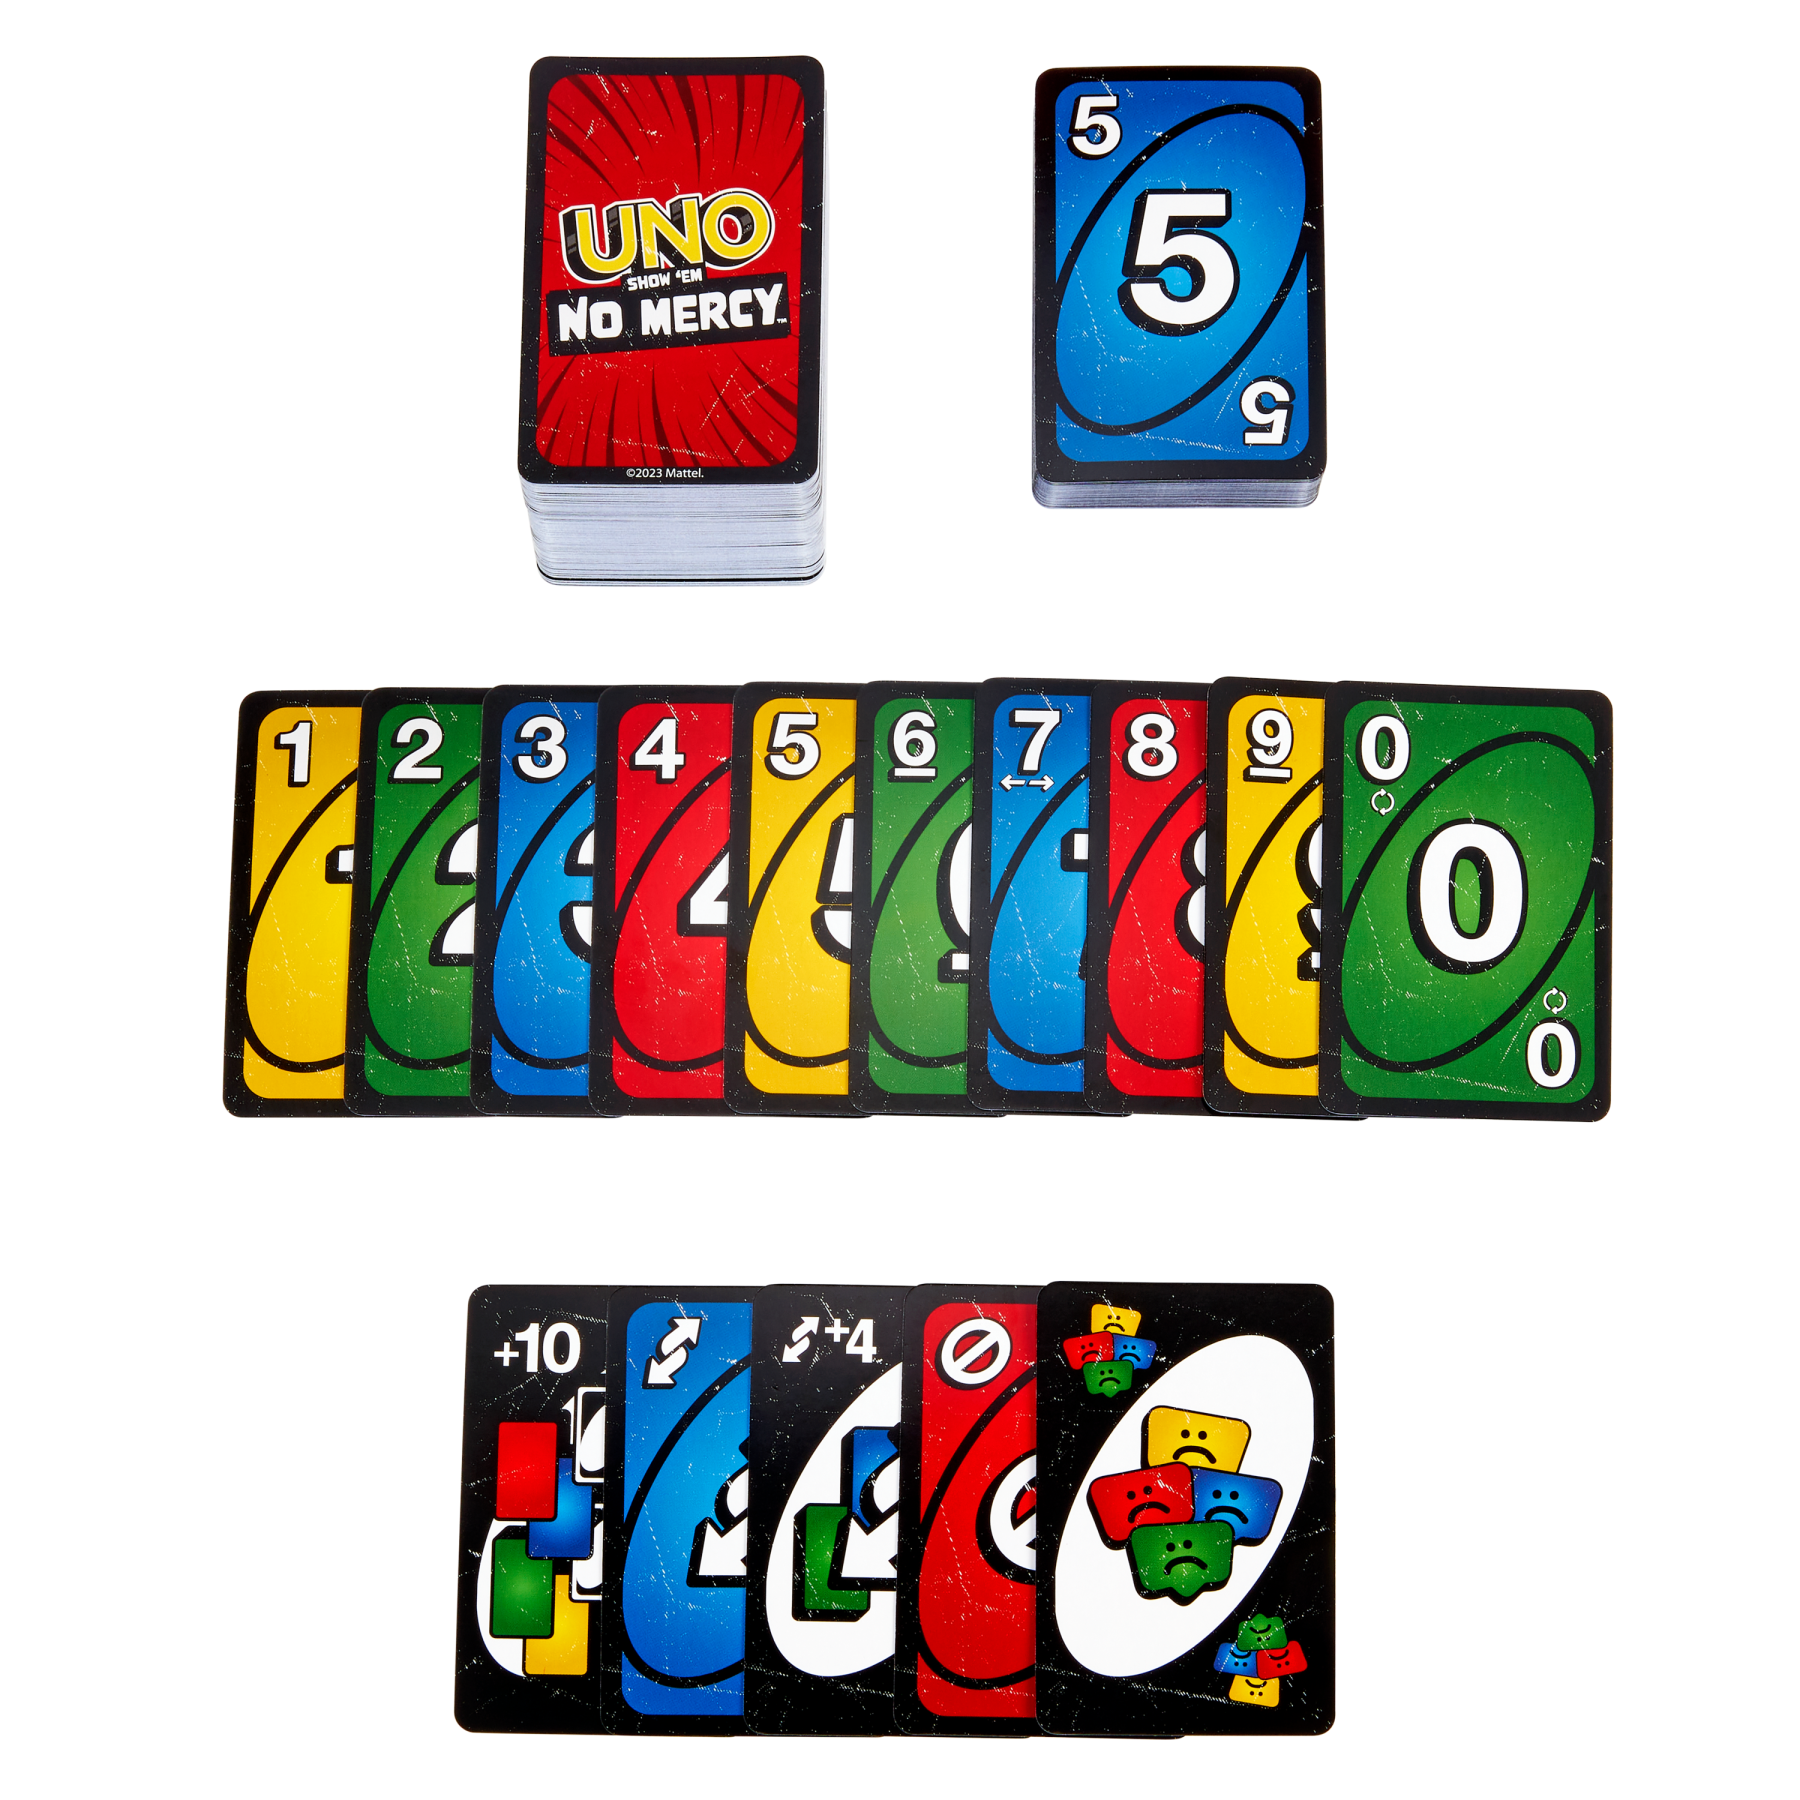 Uno no mercy - la versione di uno più brutale di sempre, con 56 nuove carte, regole speciali e carte azione spietate - MATTEL GAMES, UNO